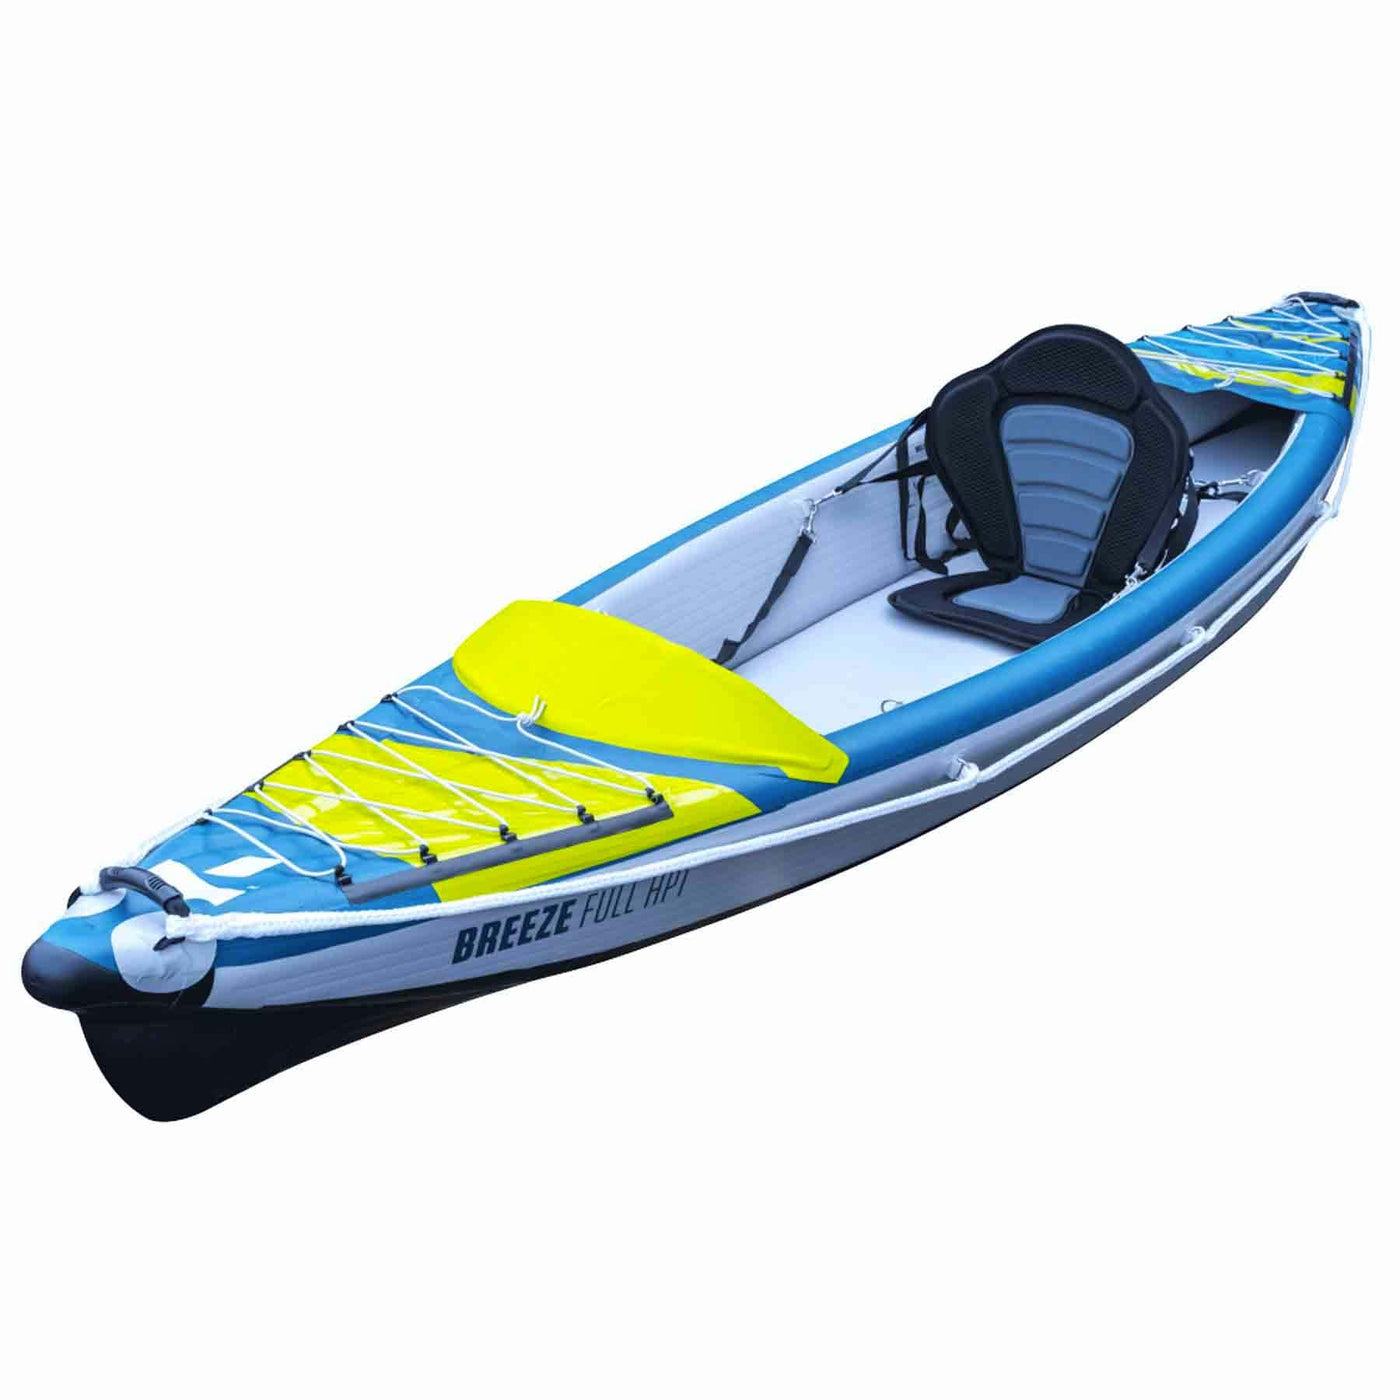 Tahe Air Breeze Full HP1 Inflatable Kayak Tahe